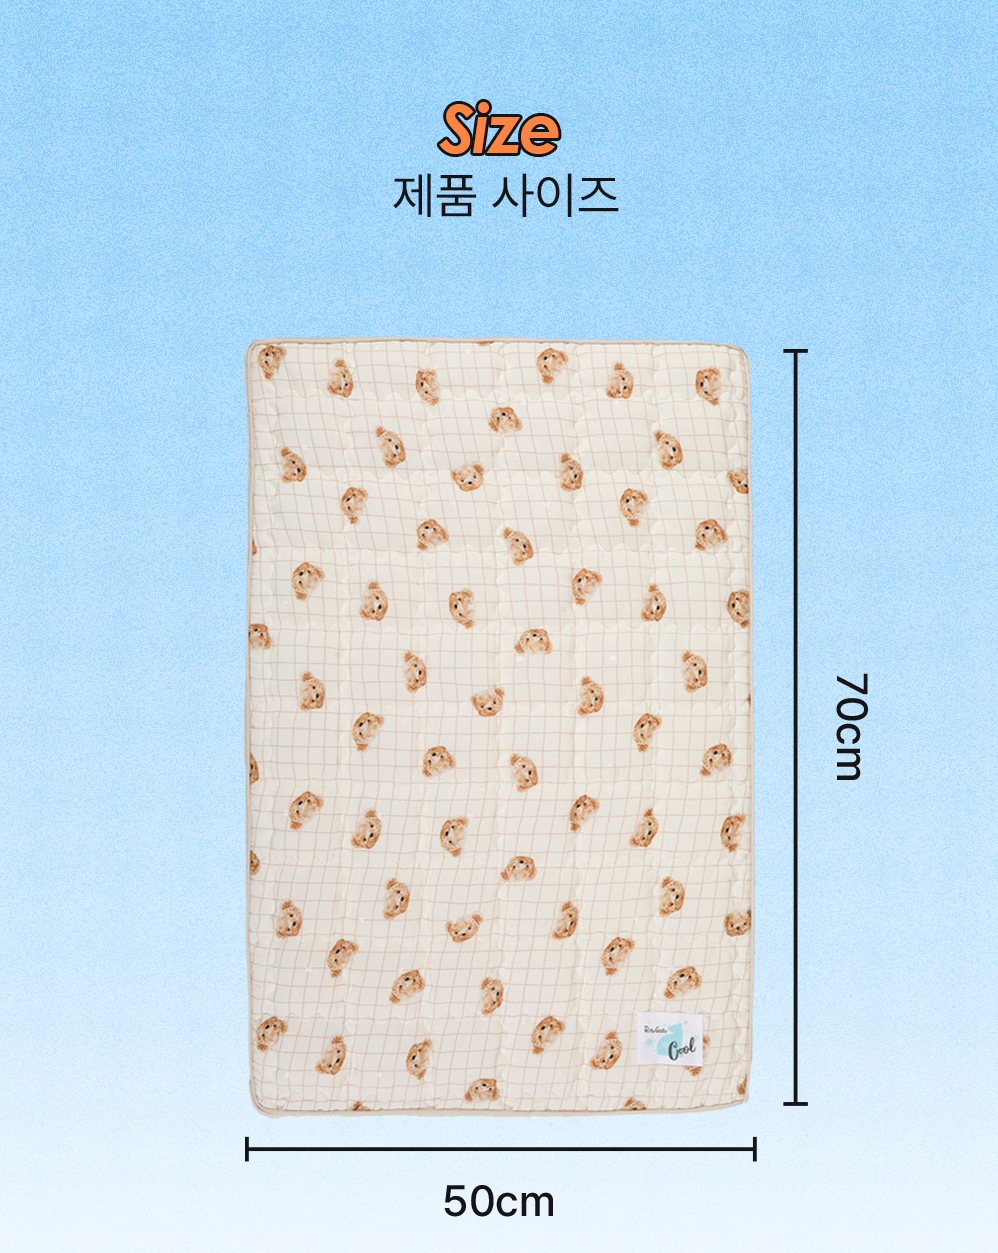 Ritogato Air-Coil氣墊涼感床連枕頭 Air-Coil Dog Cool Mat with Pillow (Check Bear)